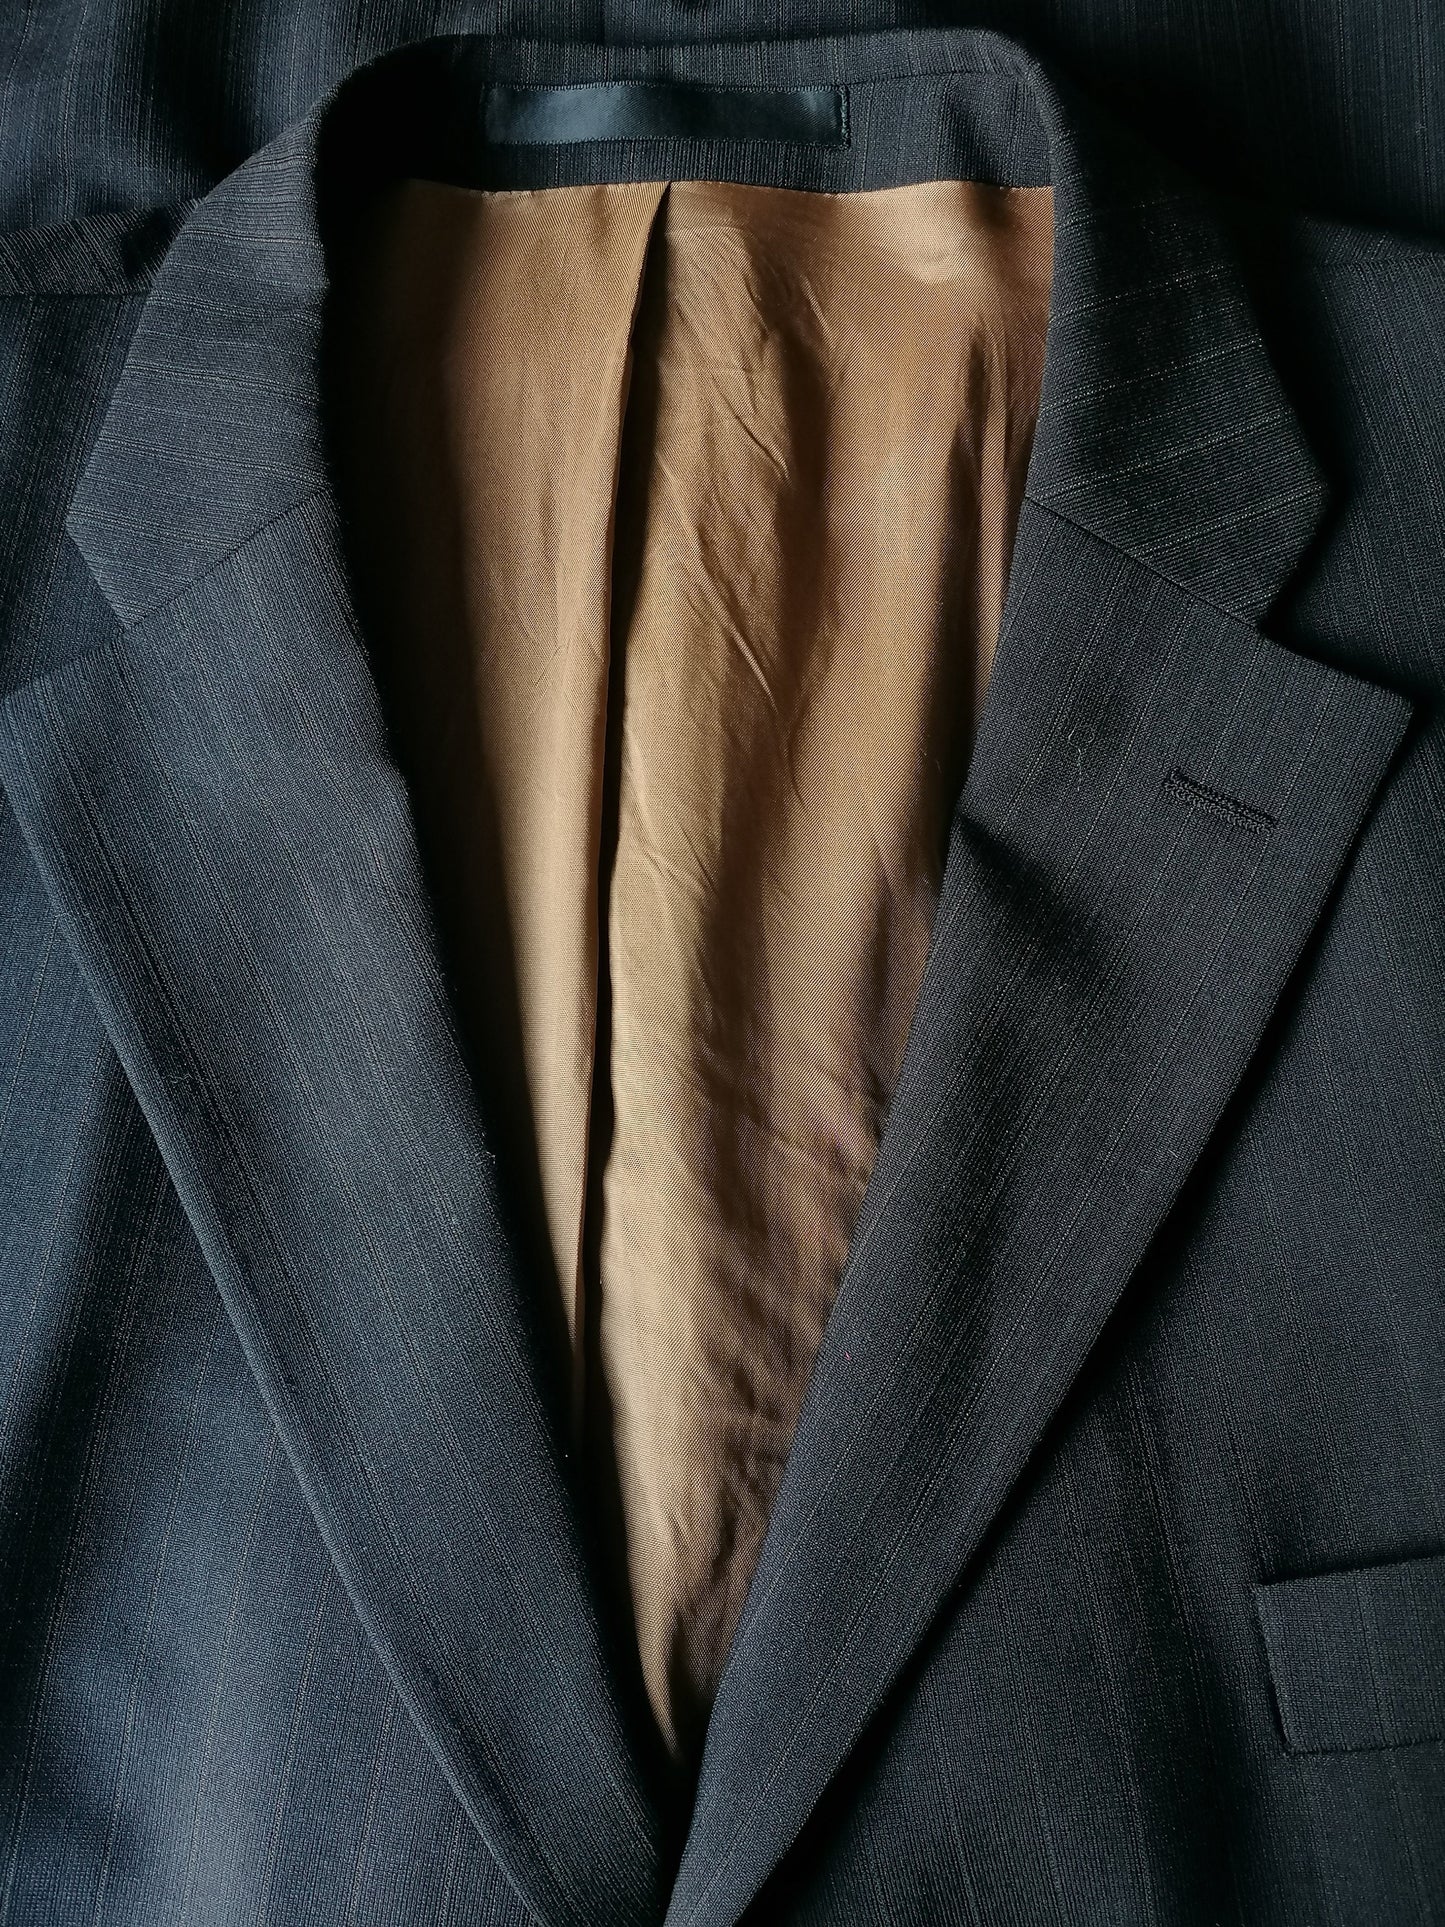 Marks & Spencer SP Woolen Jacket. Rayas de color marrón oscuro. Modelo largo. Tamaño 56 / xl.